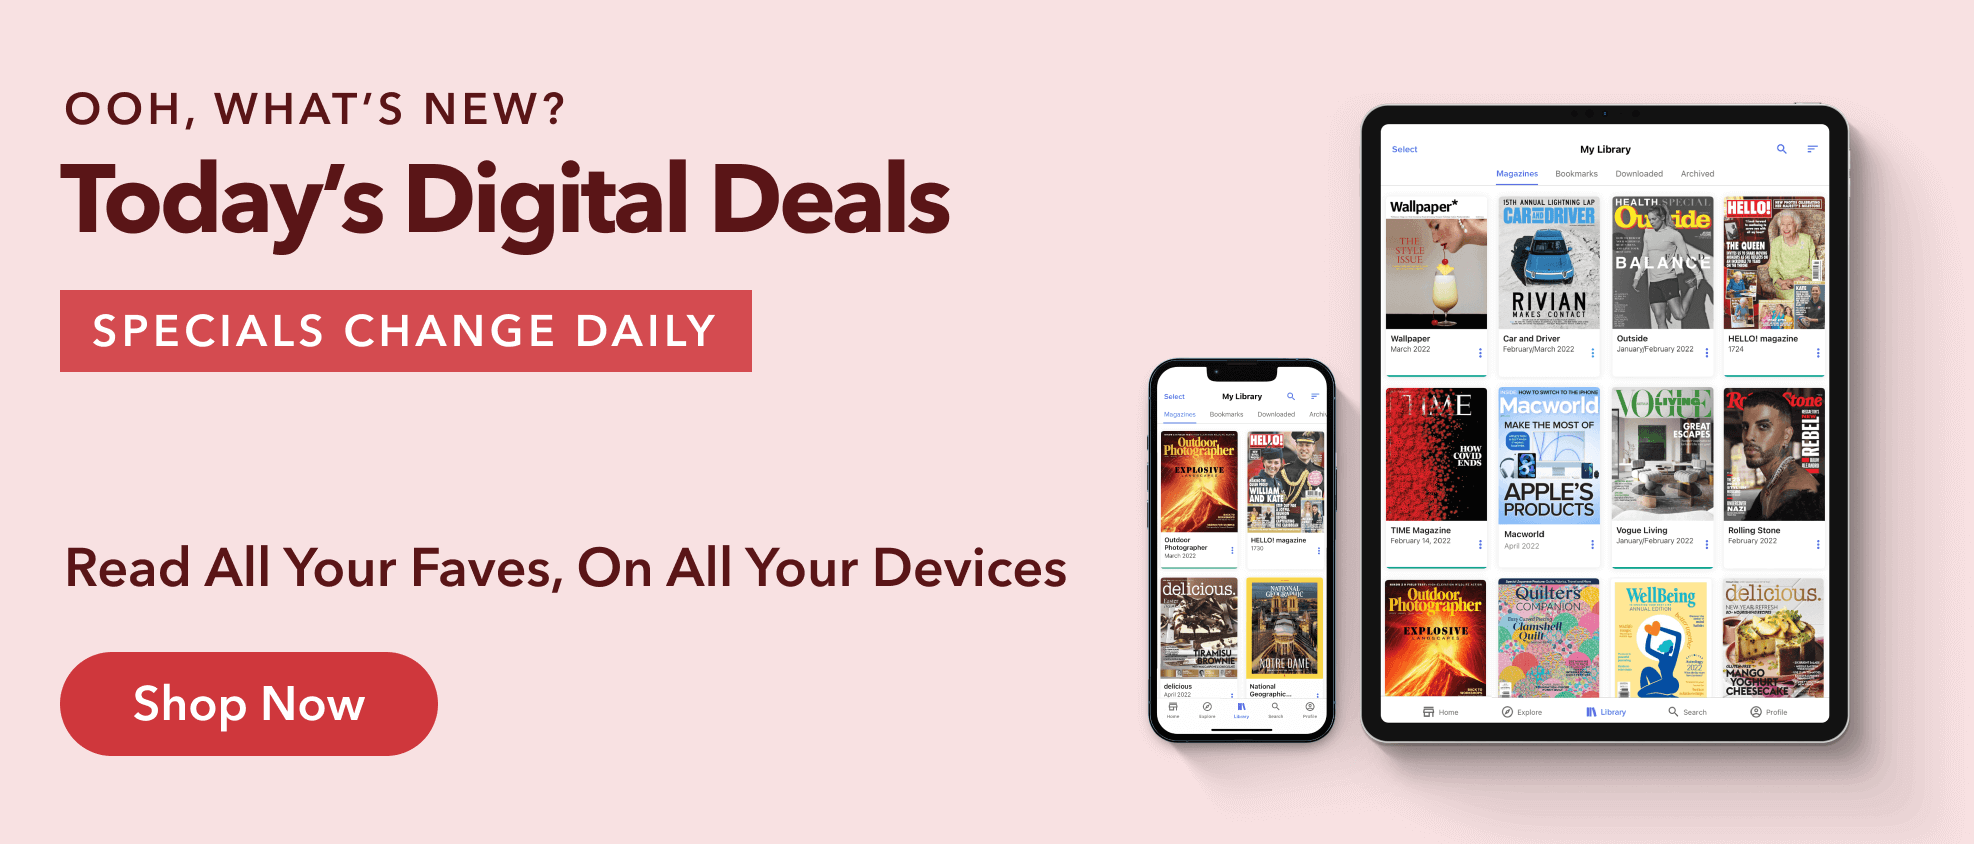 Today's Digital Deals